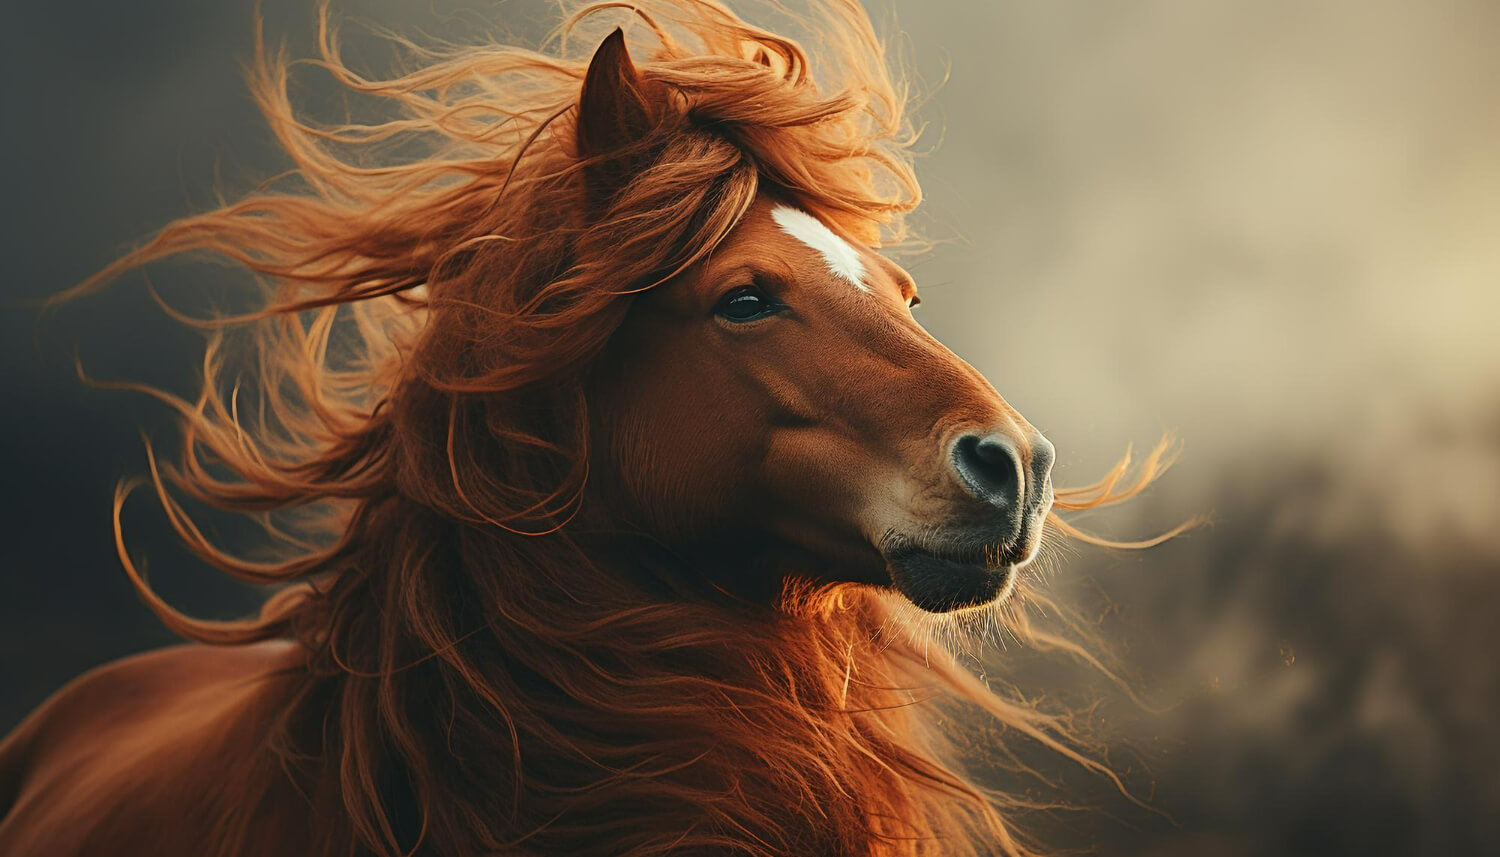 붉은색 털의 말이 말 갈귀를 펄럭이고 있다.